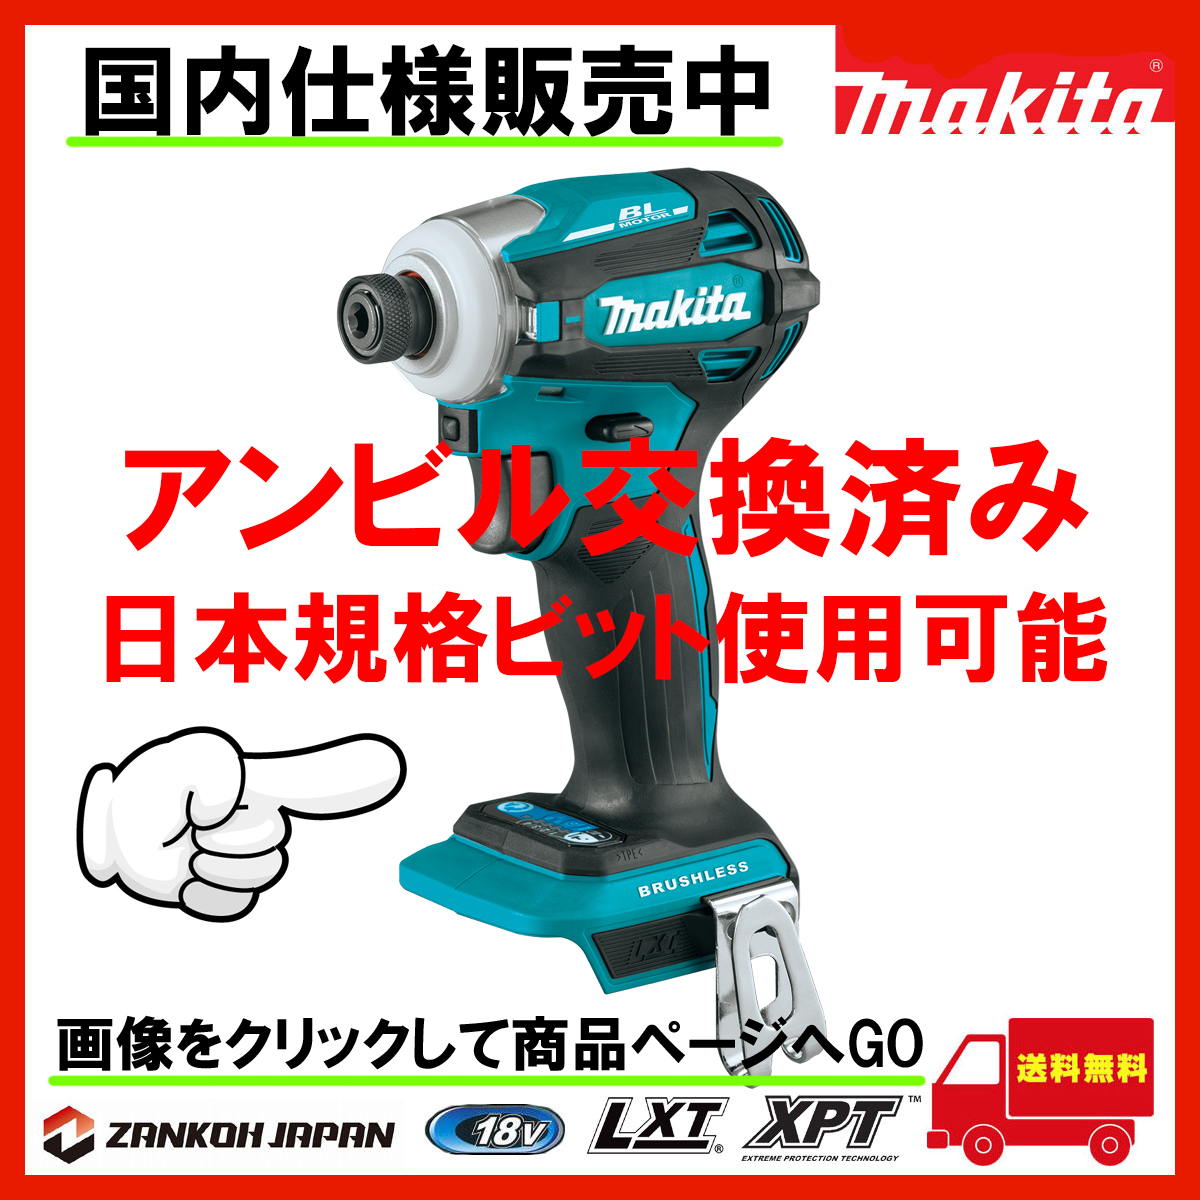 電動工具・雑貨販売 ZANKOH JAPAN - Yahoo!ショッピング